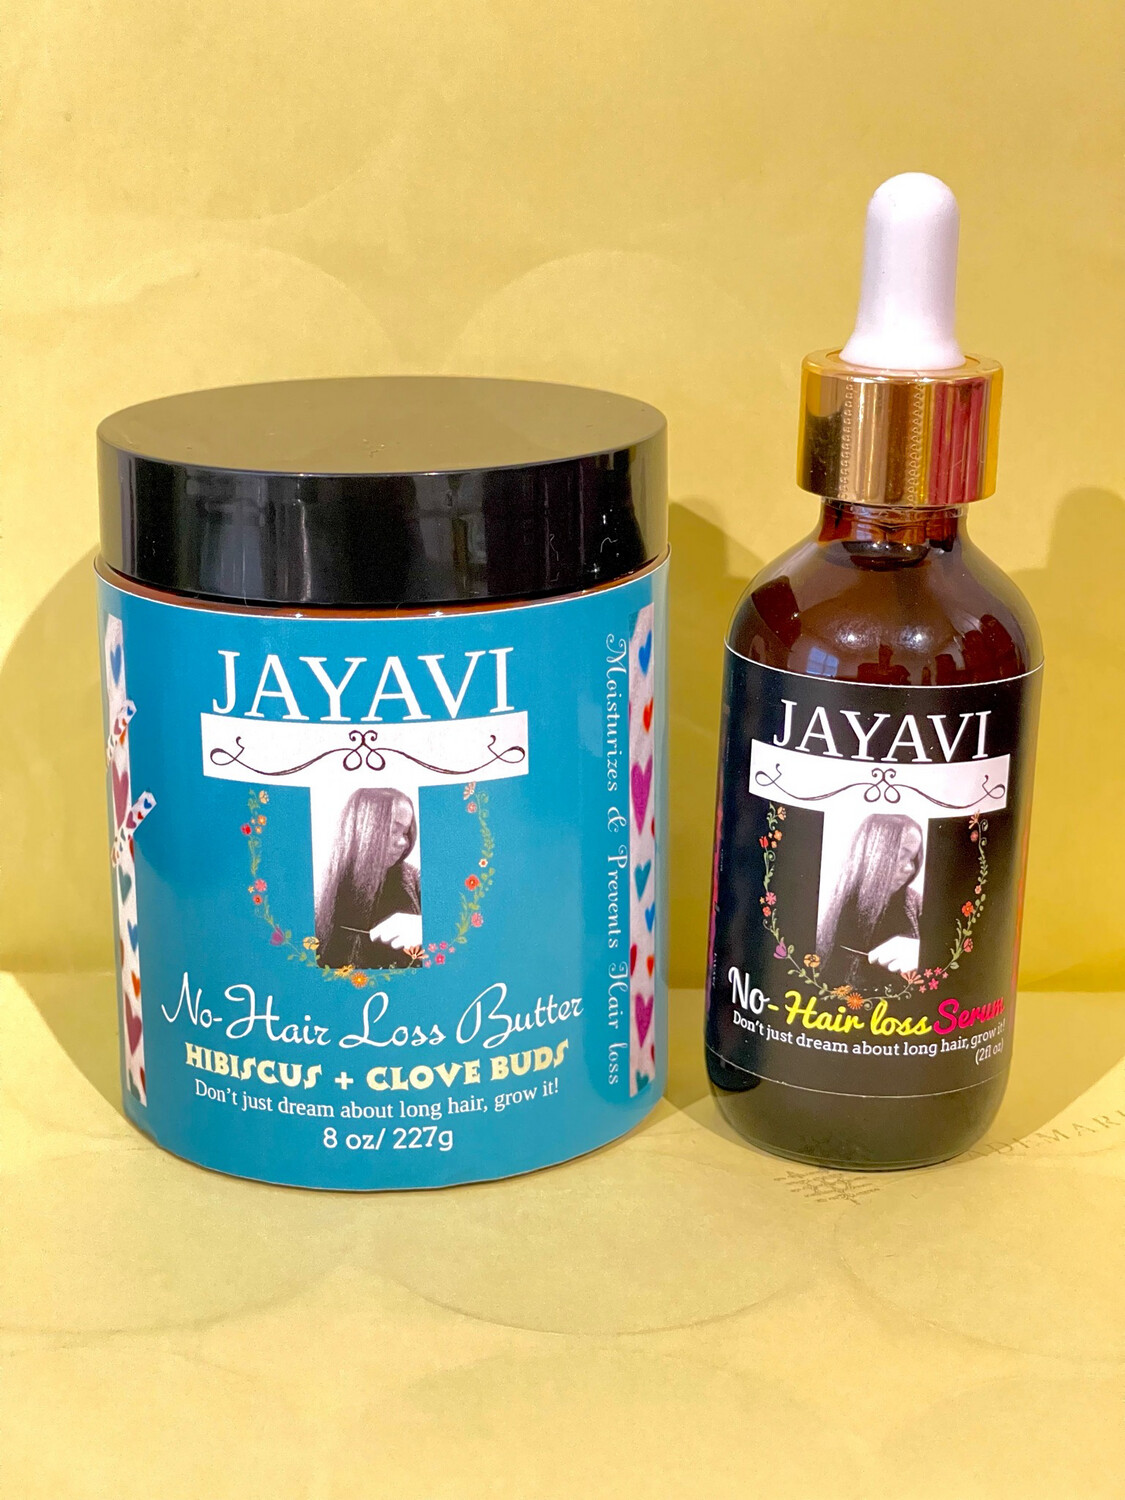 JAYAVI No-Hair loss Duo